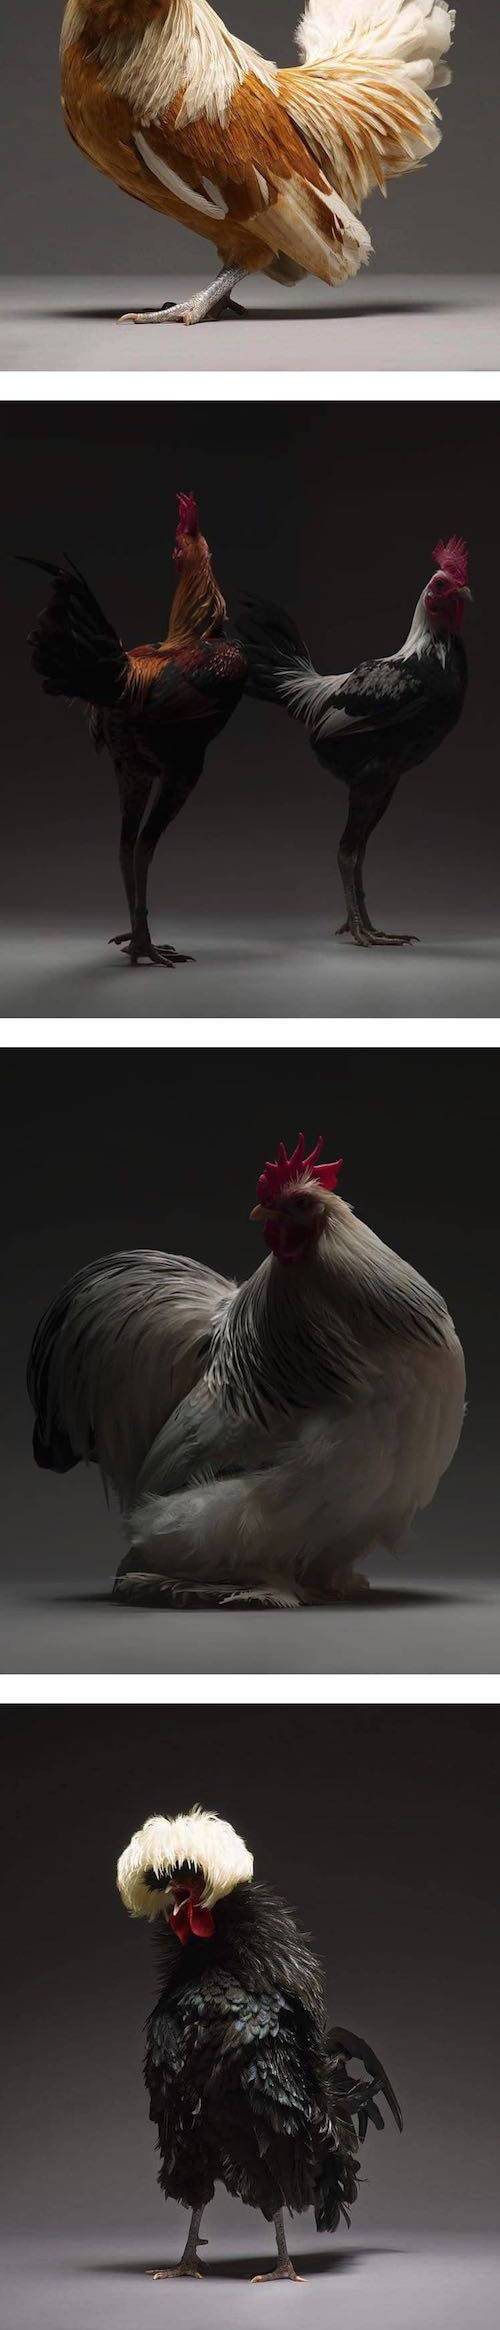 [스압] 카리쓰마 넘치는 닭 사진들.jpg